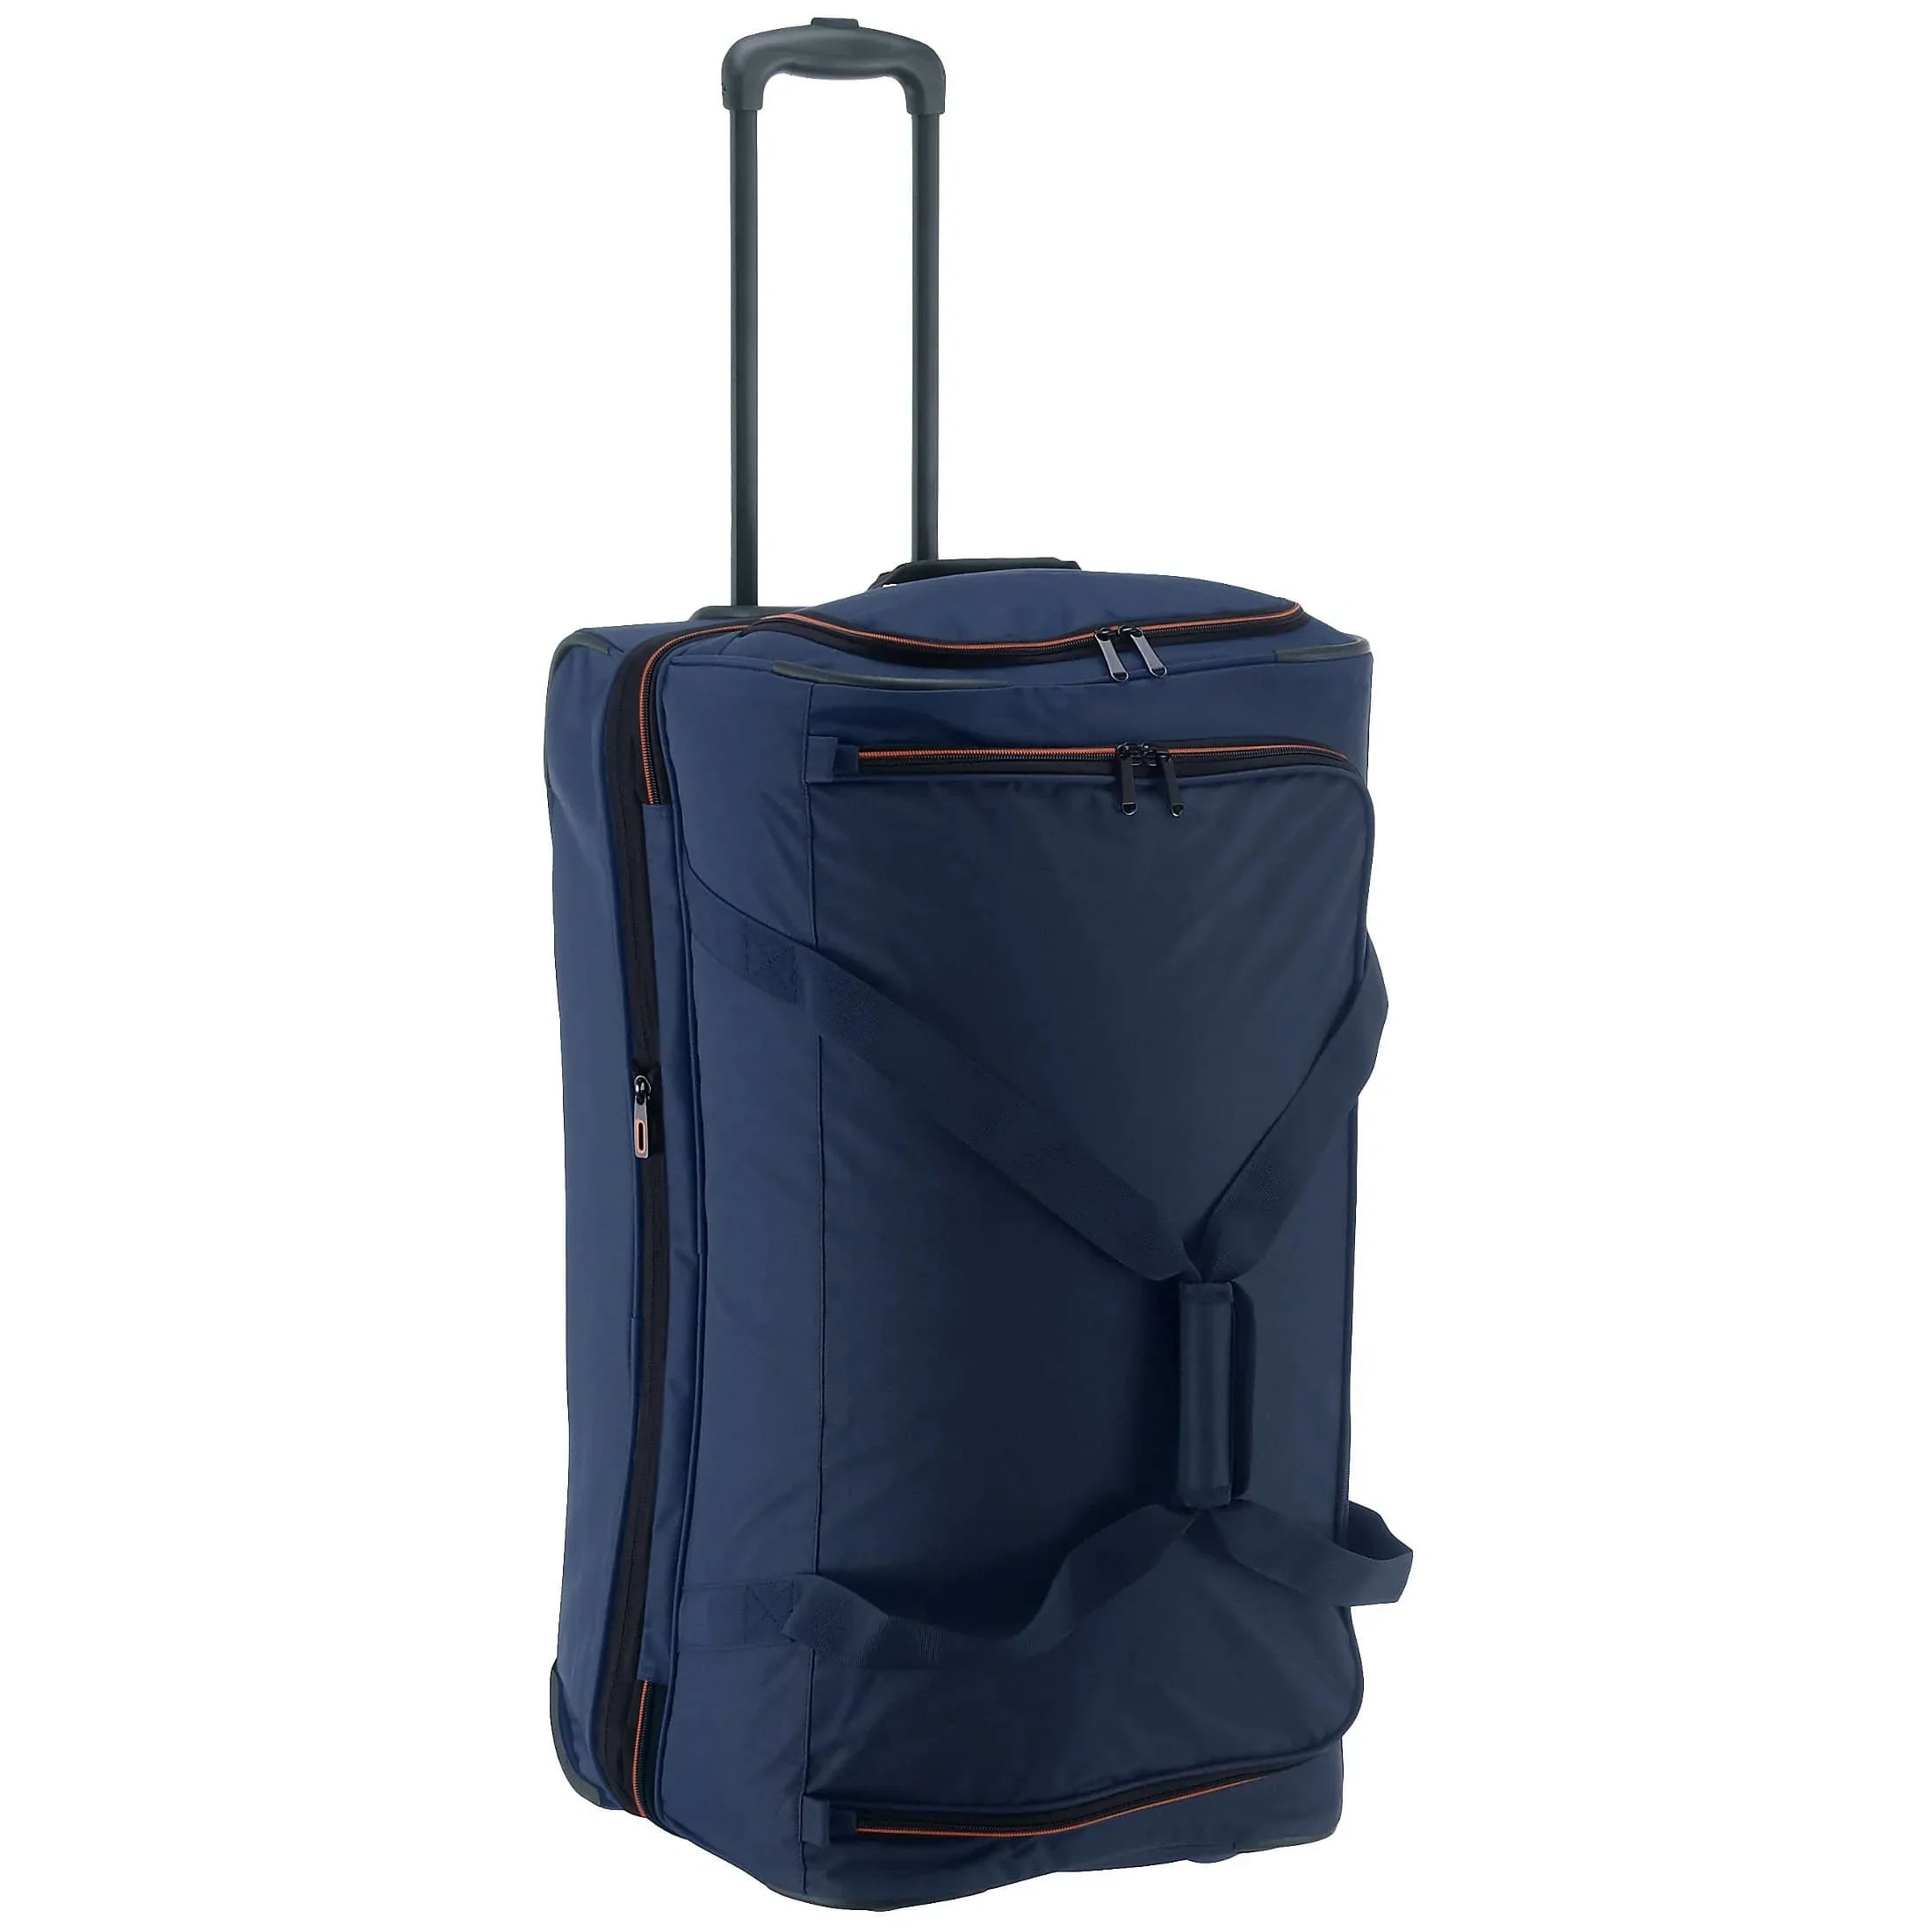 Travelite Basics trolley travel bag 70 cm - navy-orange